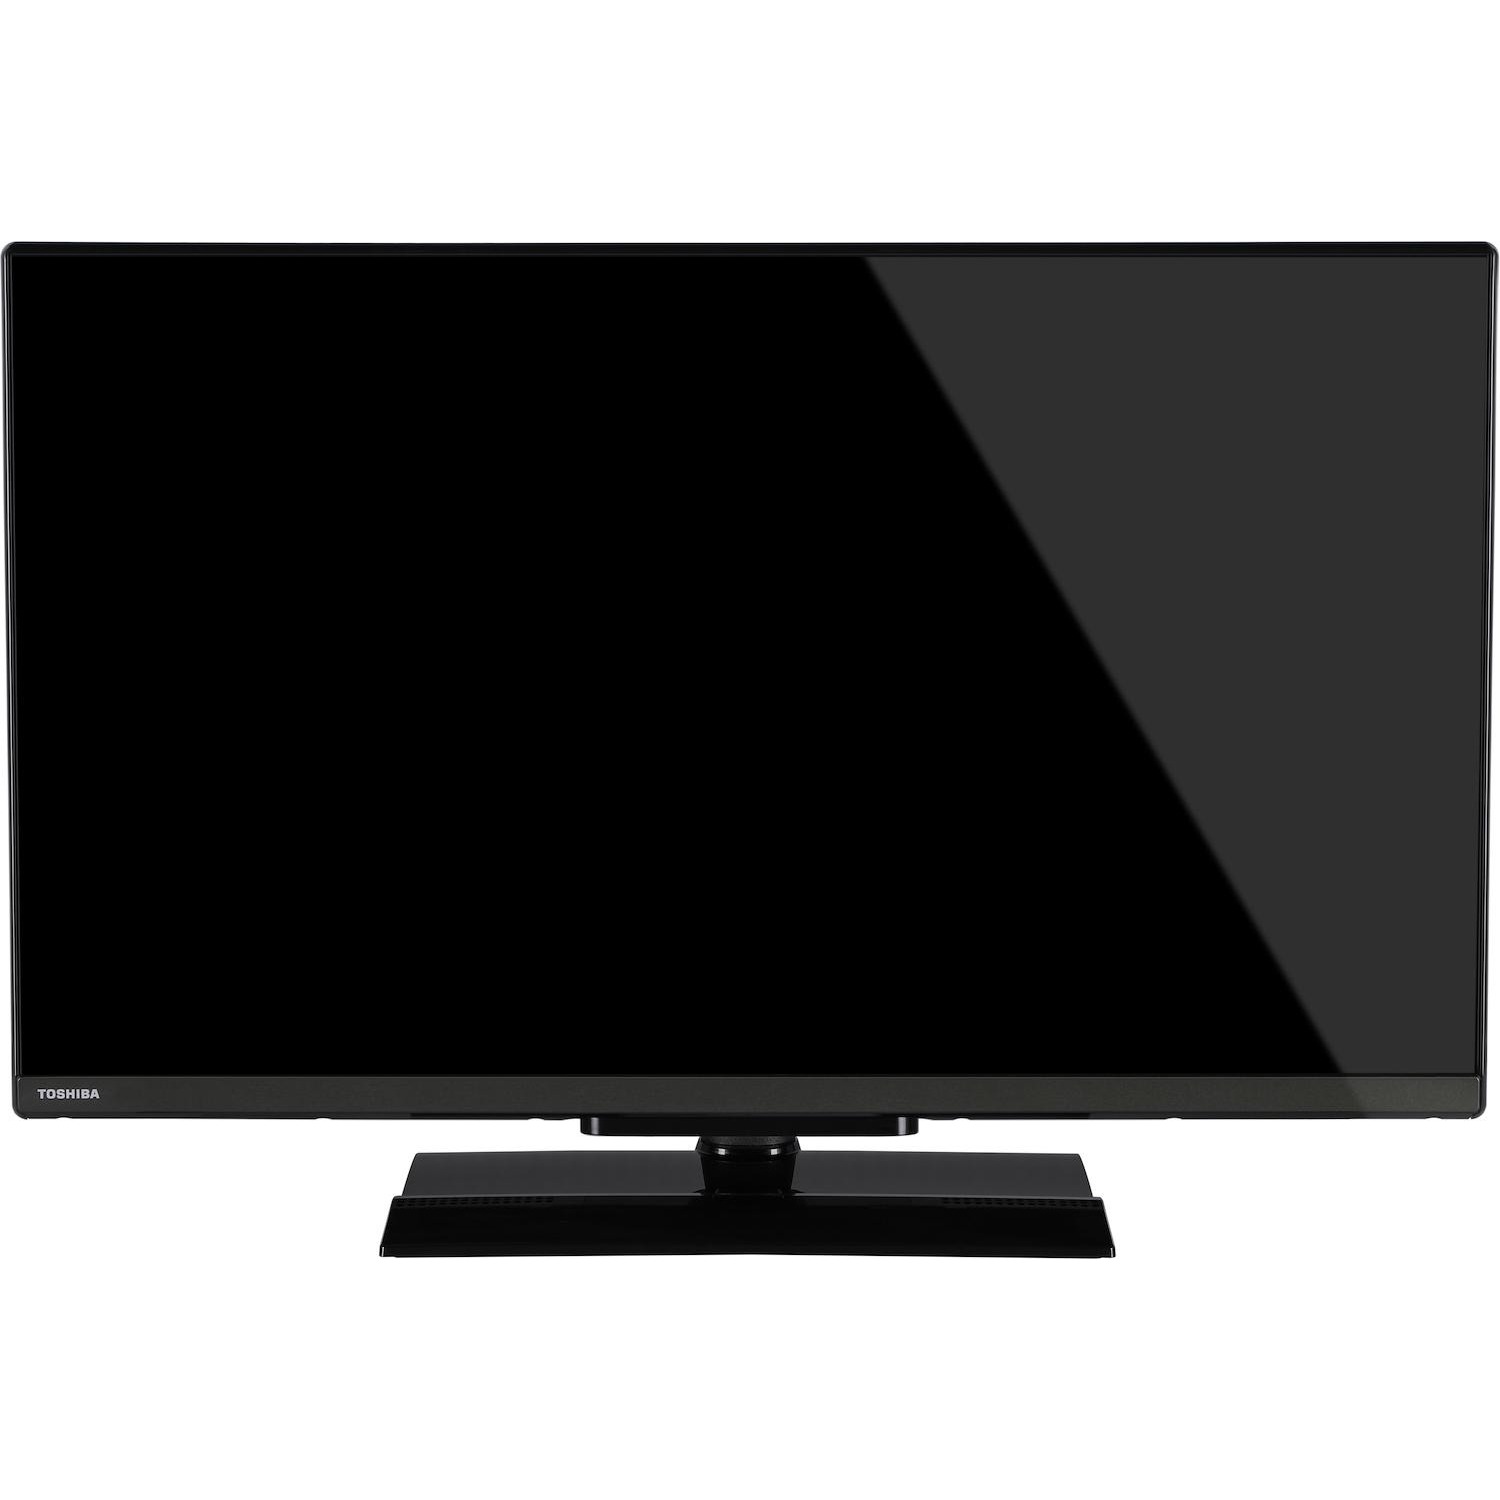 Immagine per TV LED Smart Toshiba 32LV3E63DA FULL HD da DIMOStore